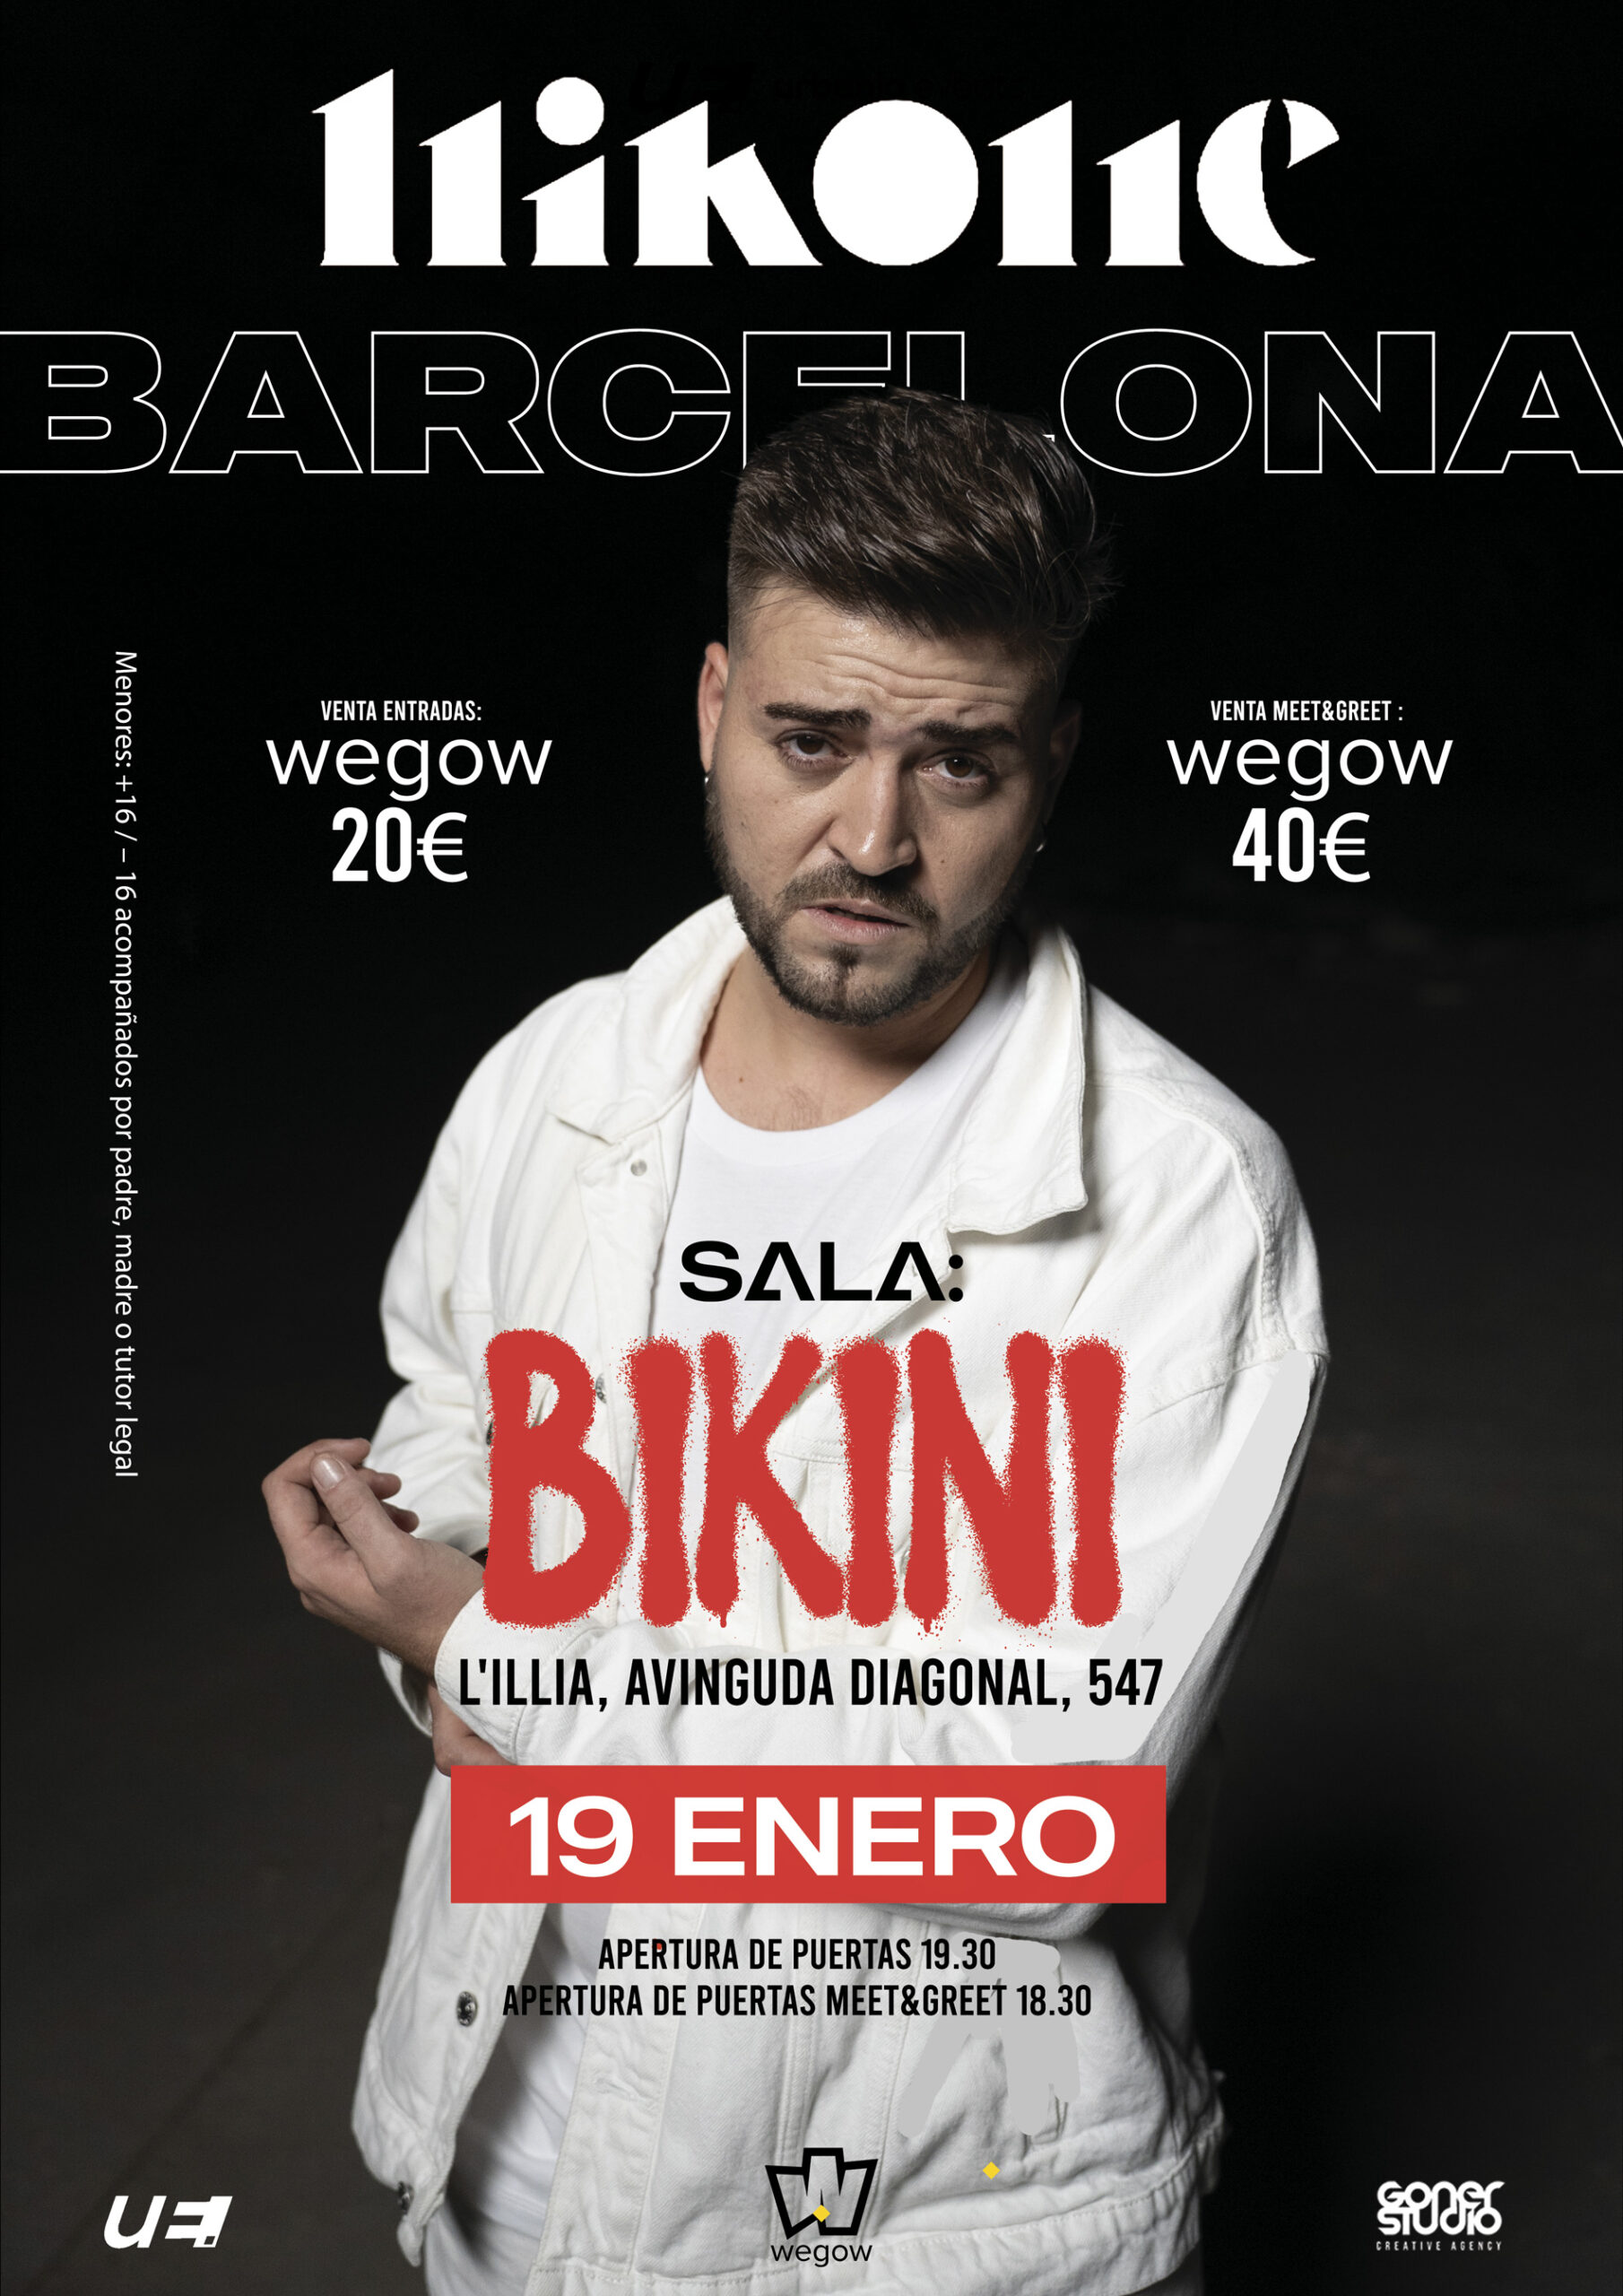 nikone en concierto en barcelona 1677953305850519